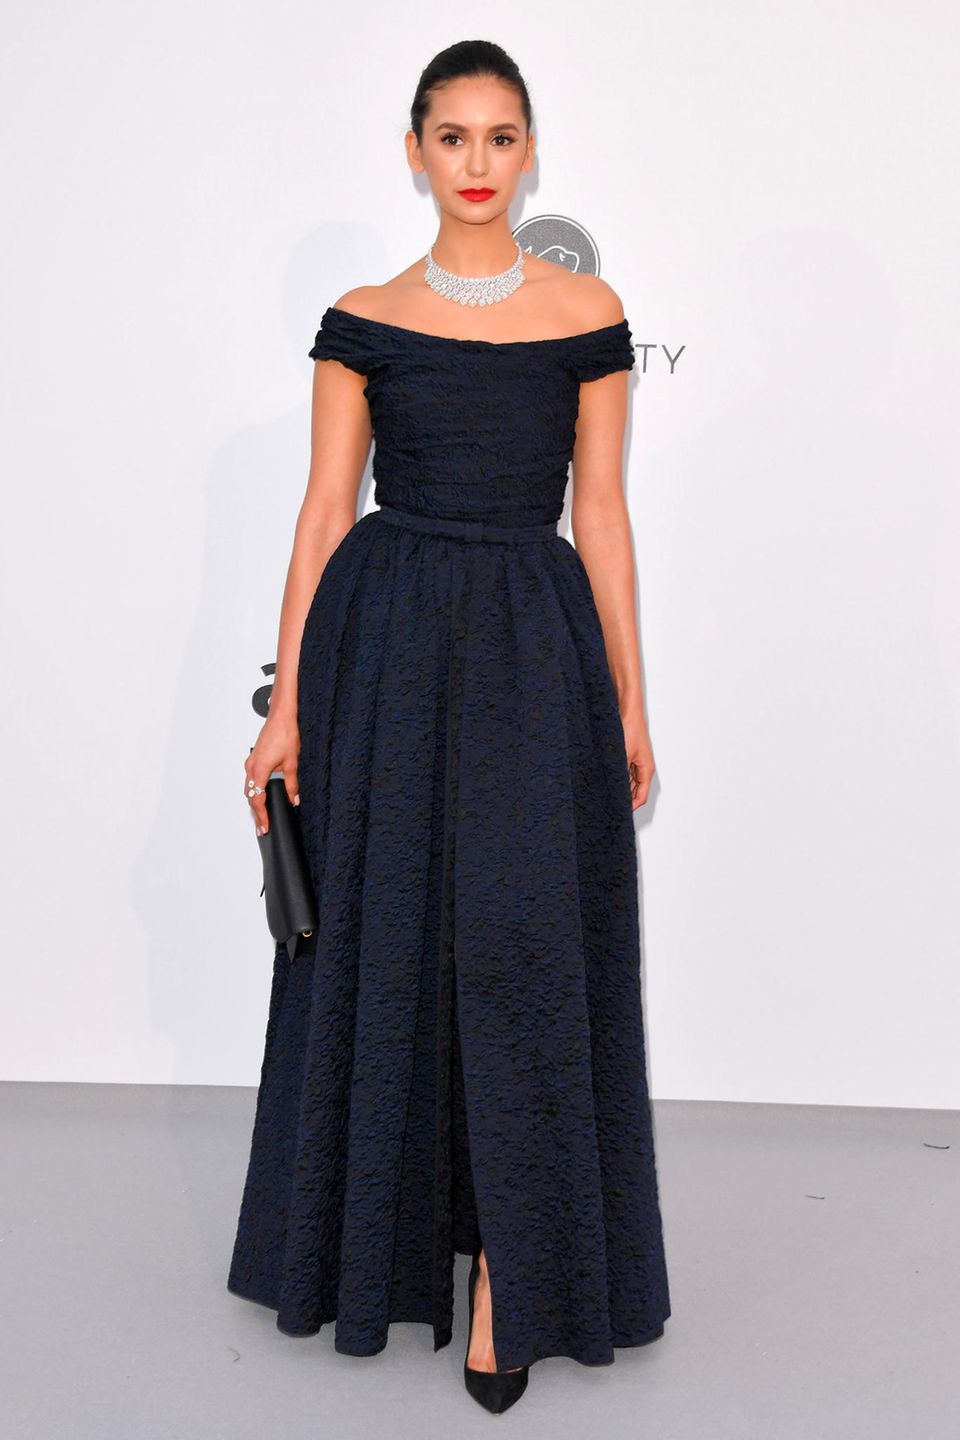 Elegant, aber fast ein wenig unauffällig wirkt Nina Dobrev in ihrer dunkelblauen Dior-Robe.